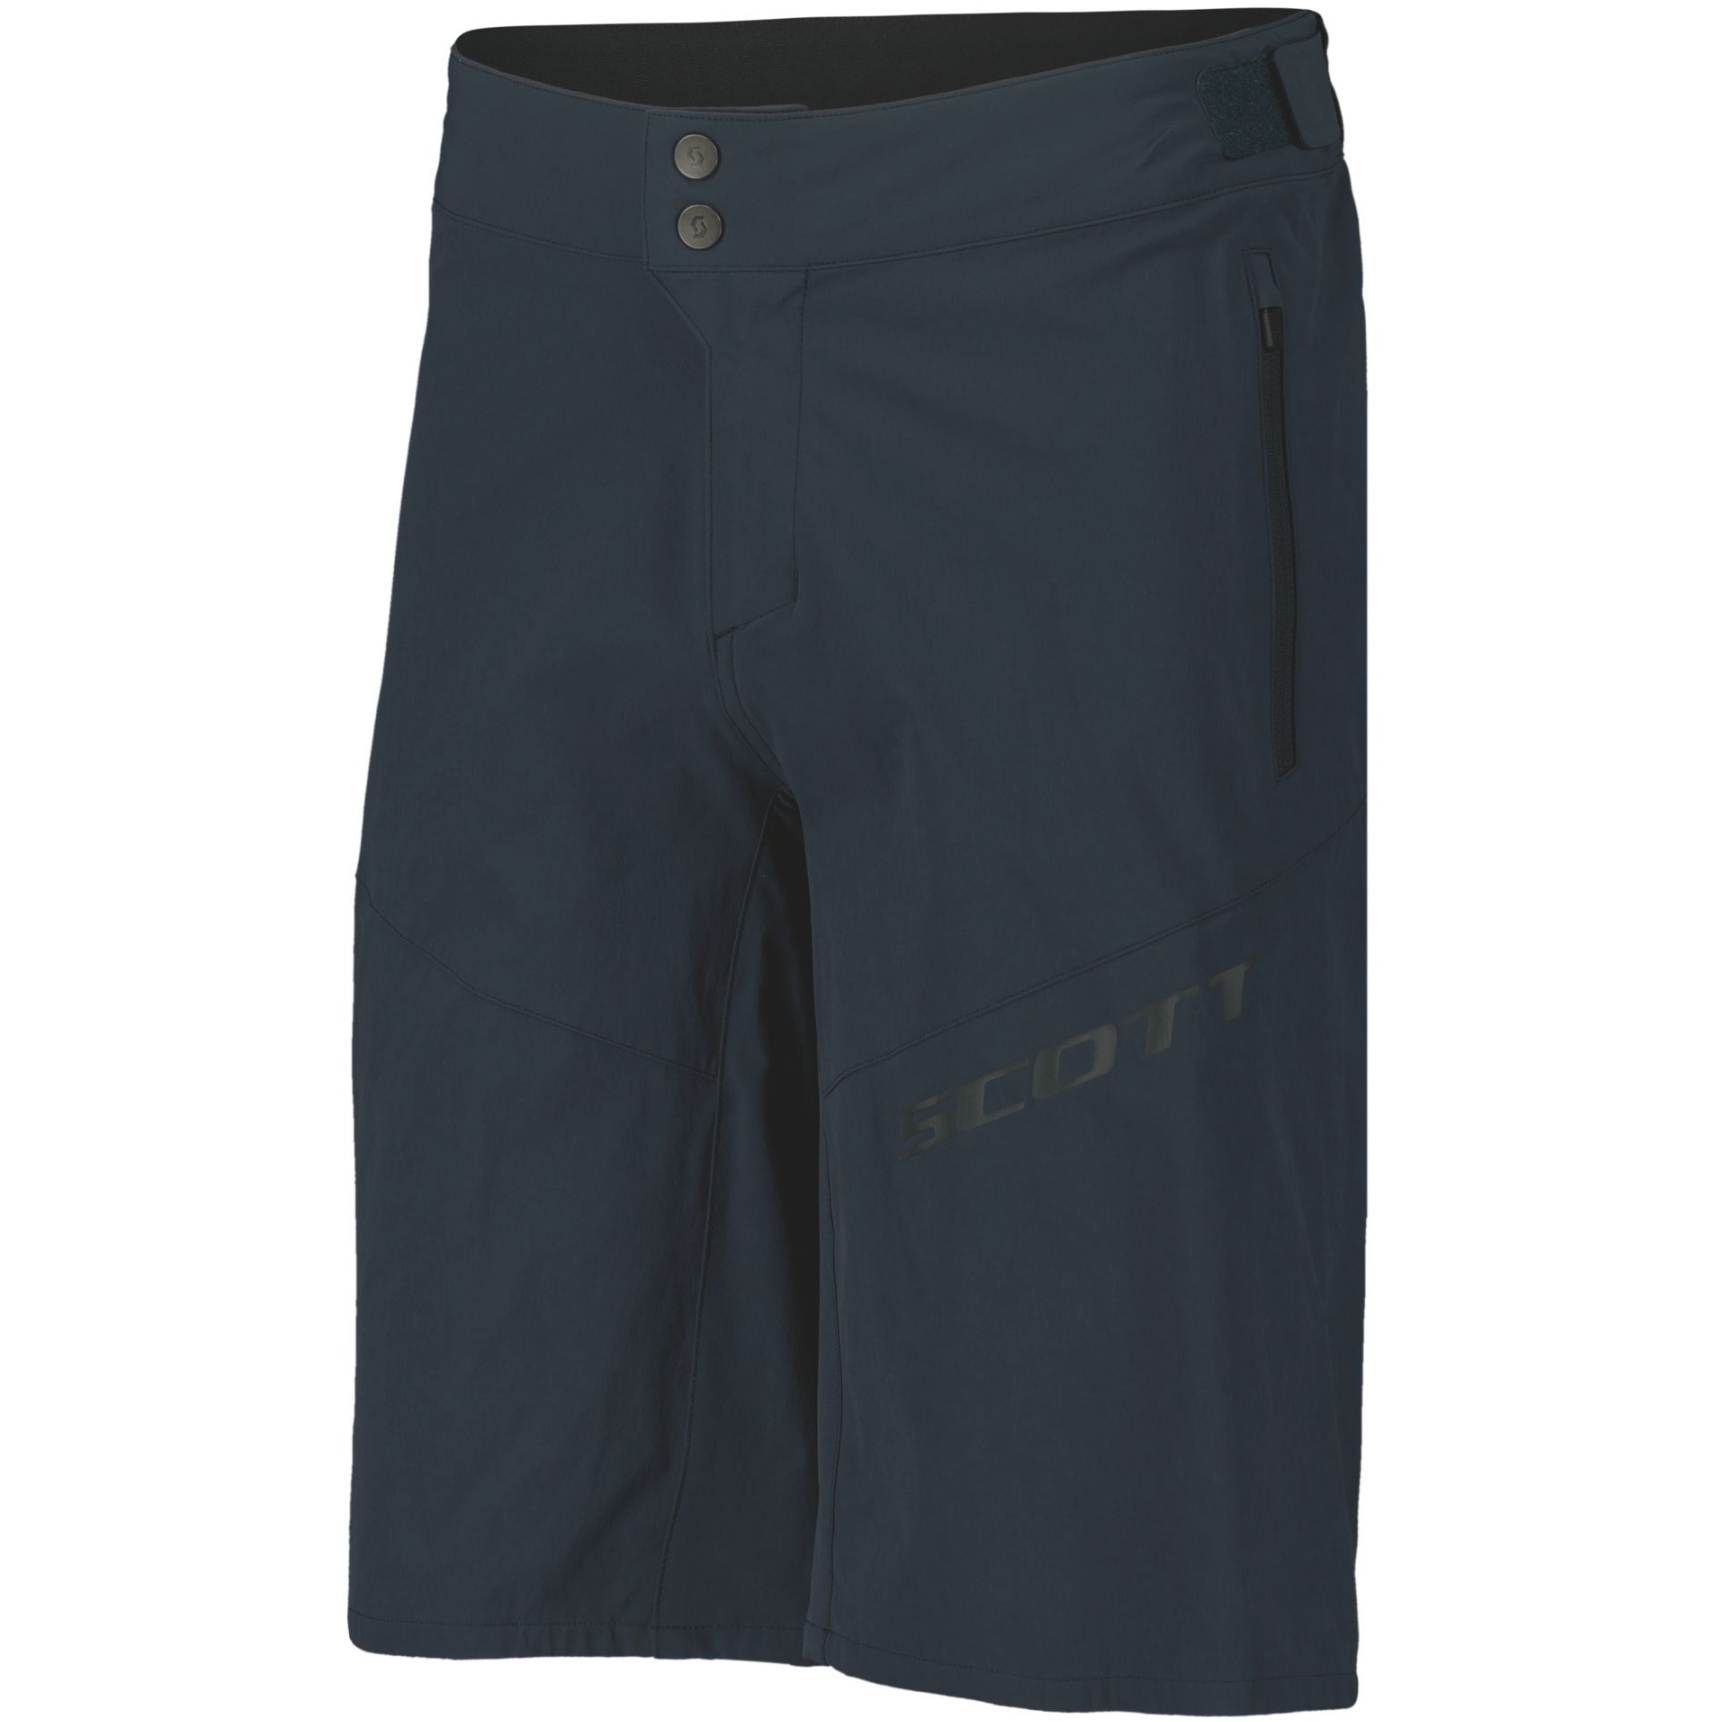 SCOTT Endurance ls/fit w/pad Shorts Men - dark blue | BIKE24